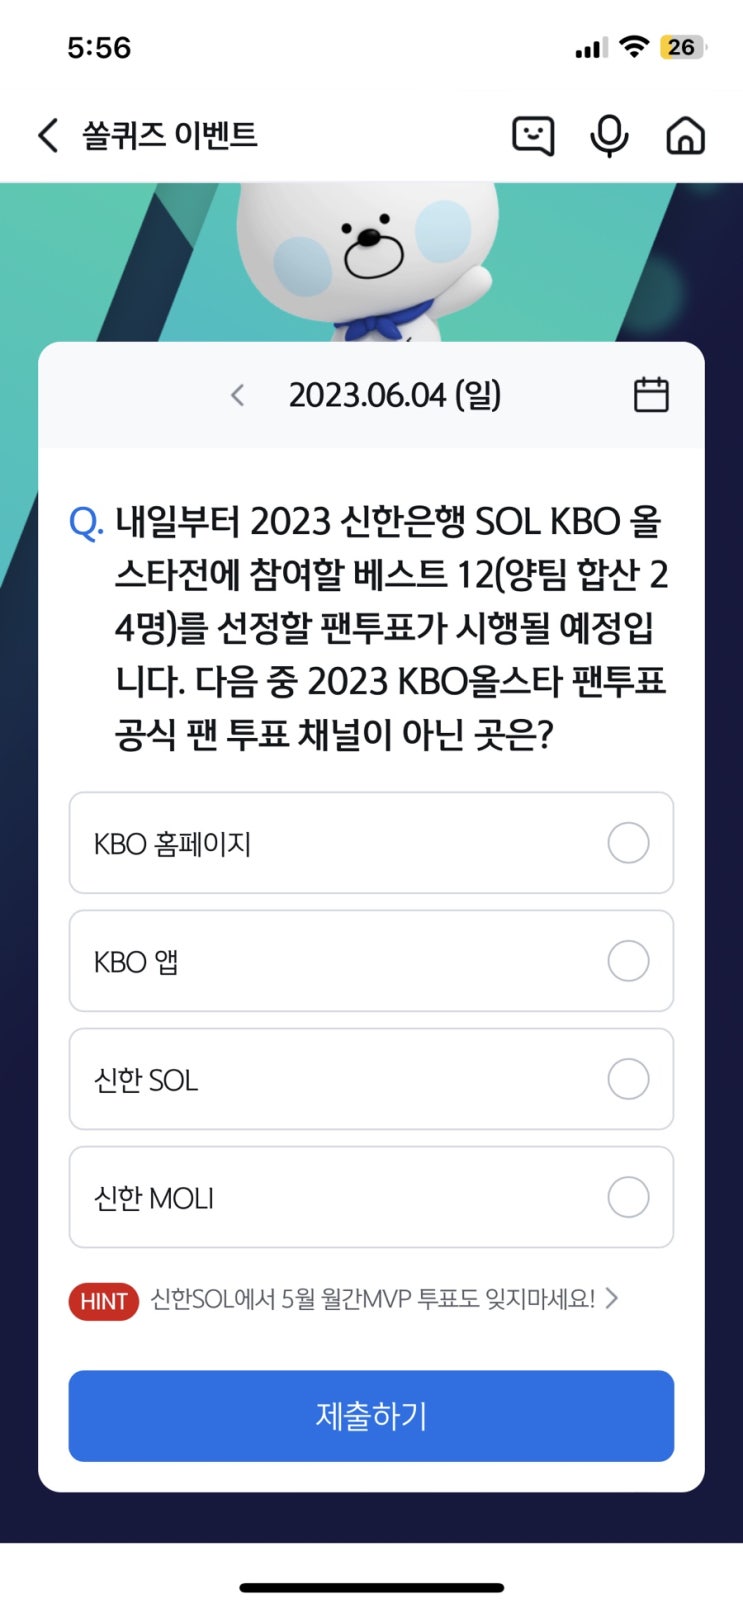 신한 쏠퀴즈(쏠야구) 6월4일 정답 - 다음 중 2023 KBO 올스타 팬투표 공식 팬 투표 채널이 아닌 곳은?